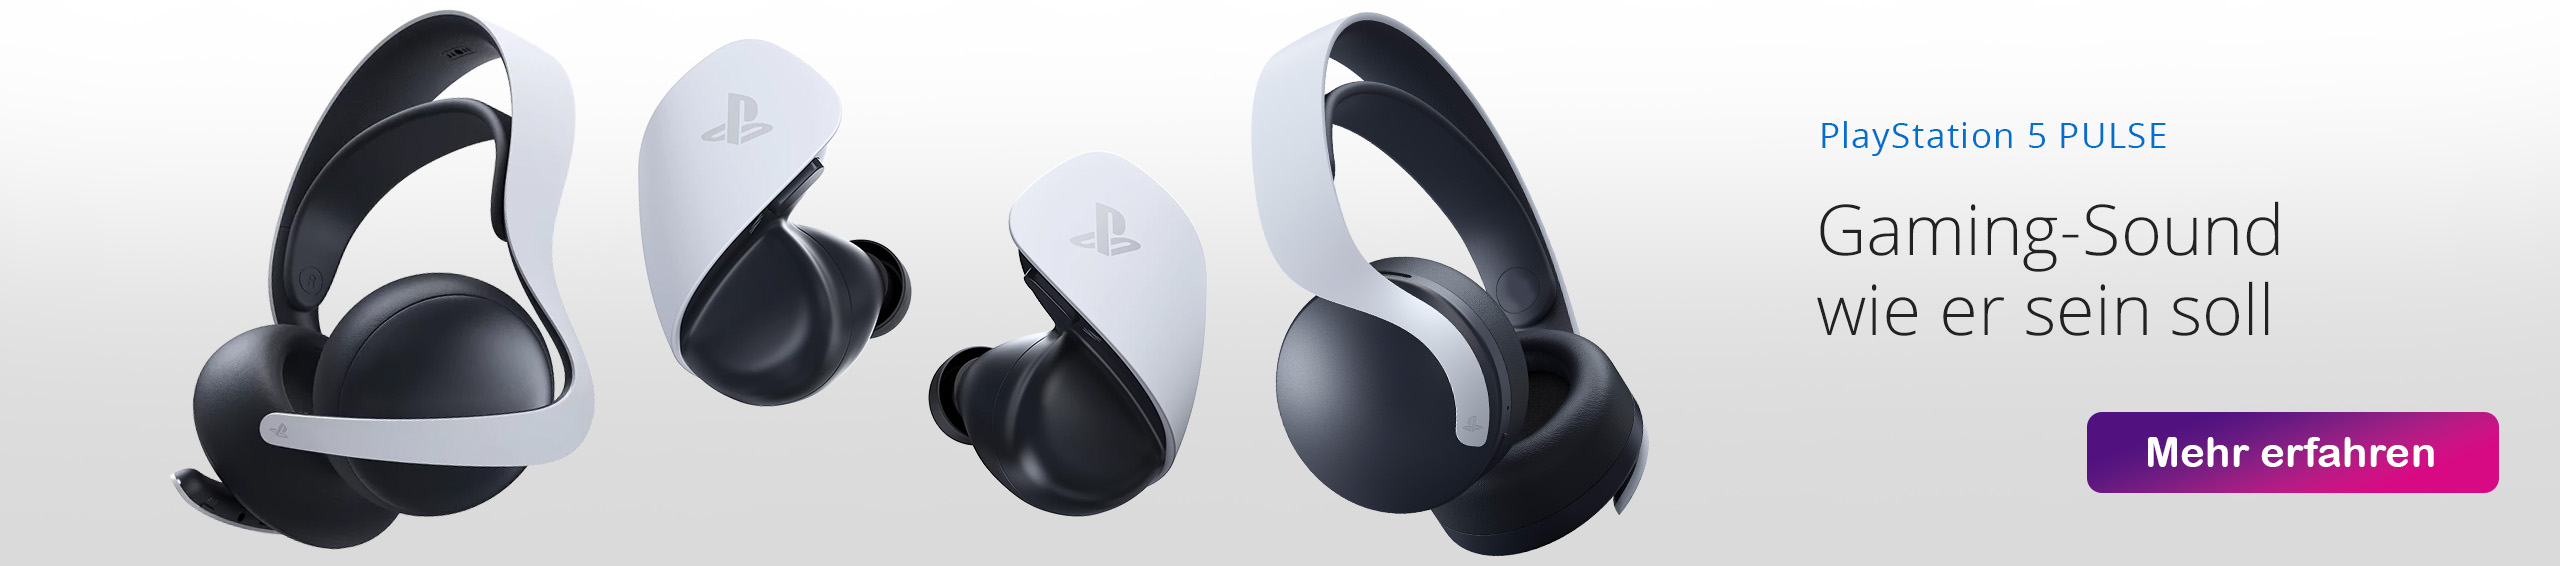 PlayStation PULSE Headsets und Explore für die PlayStation 5 Konsole bei GameStop kaufen